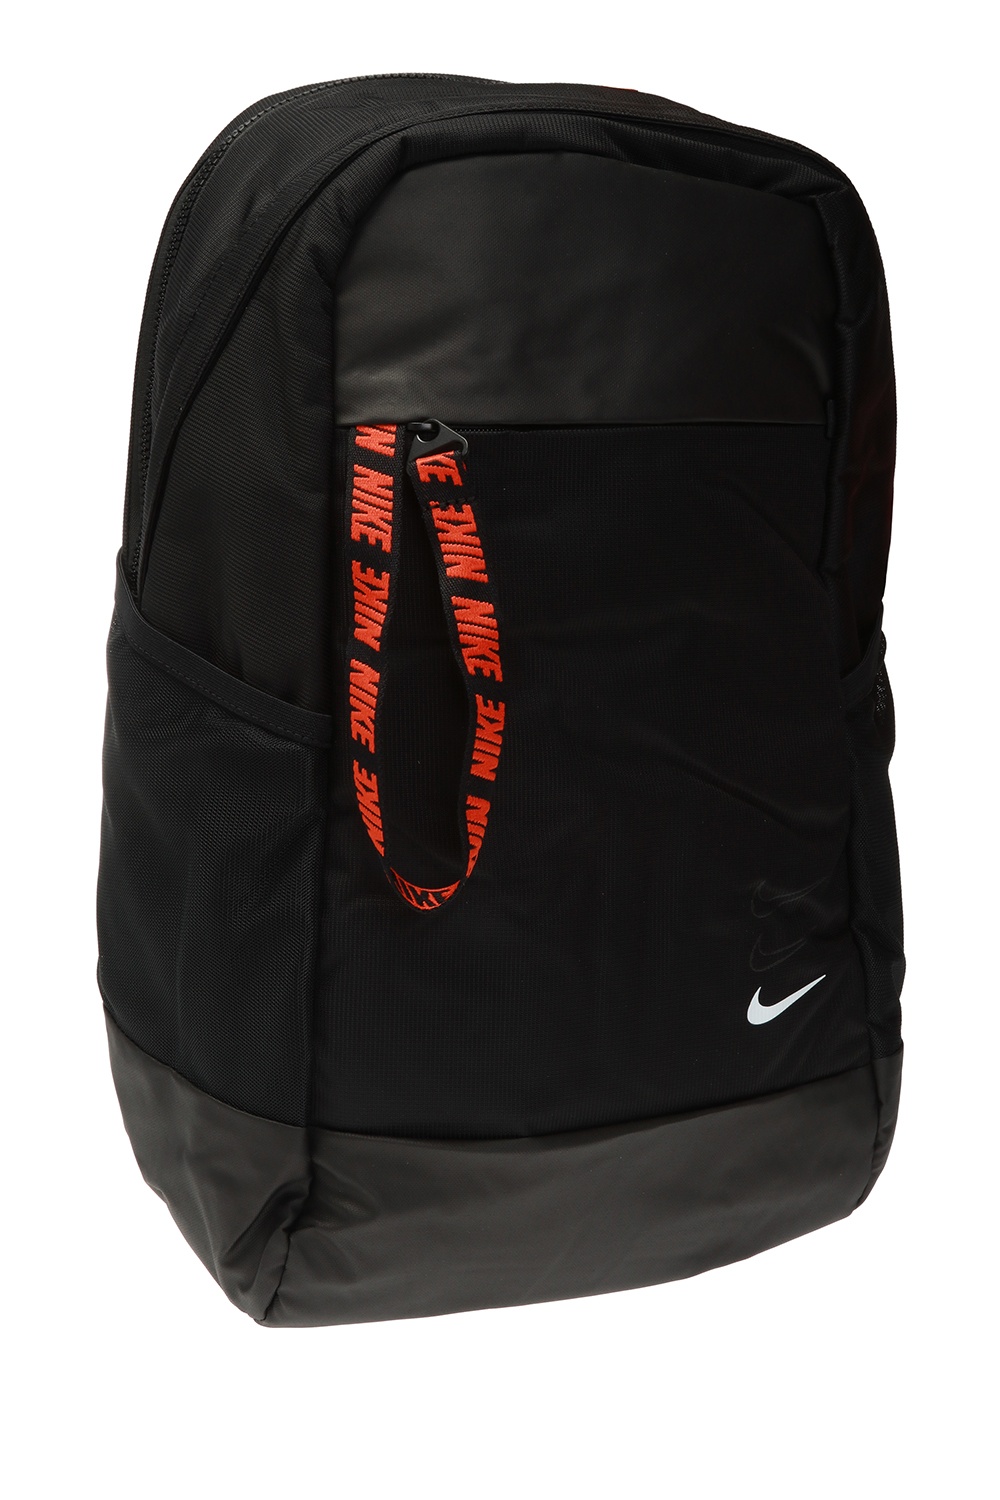 Las bacterias Adepto diferente Nike Backpack with waterproof elements | Men's Bags | Vitkac